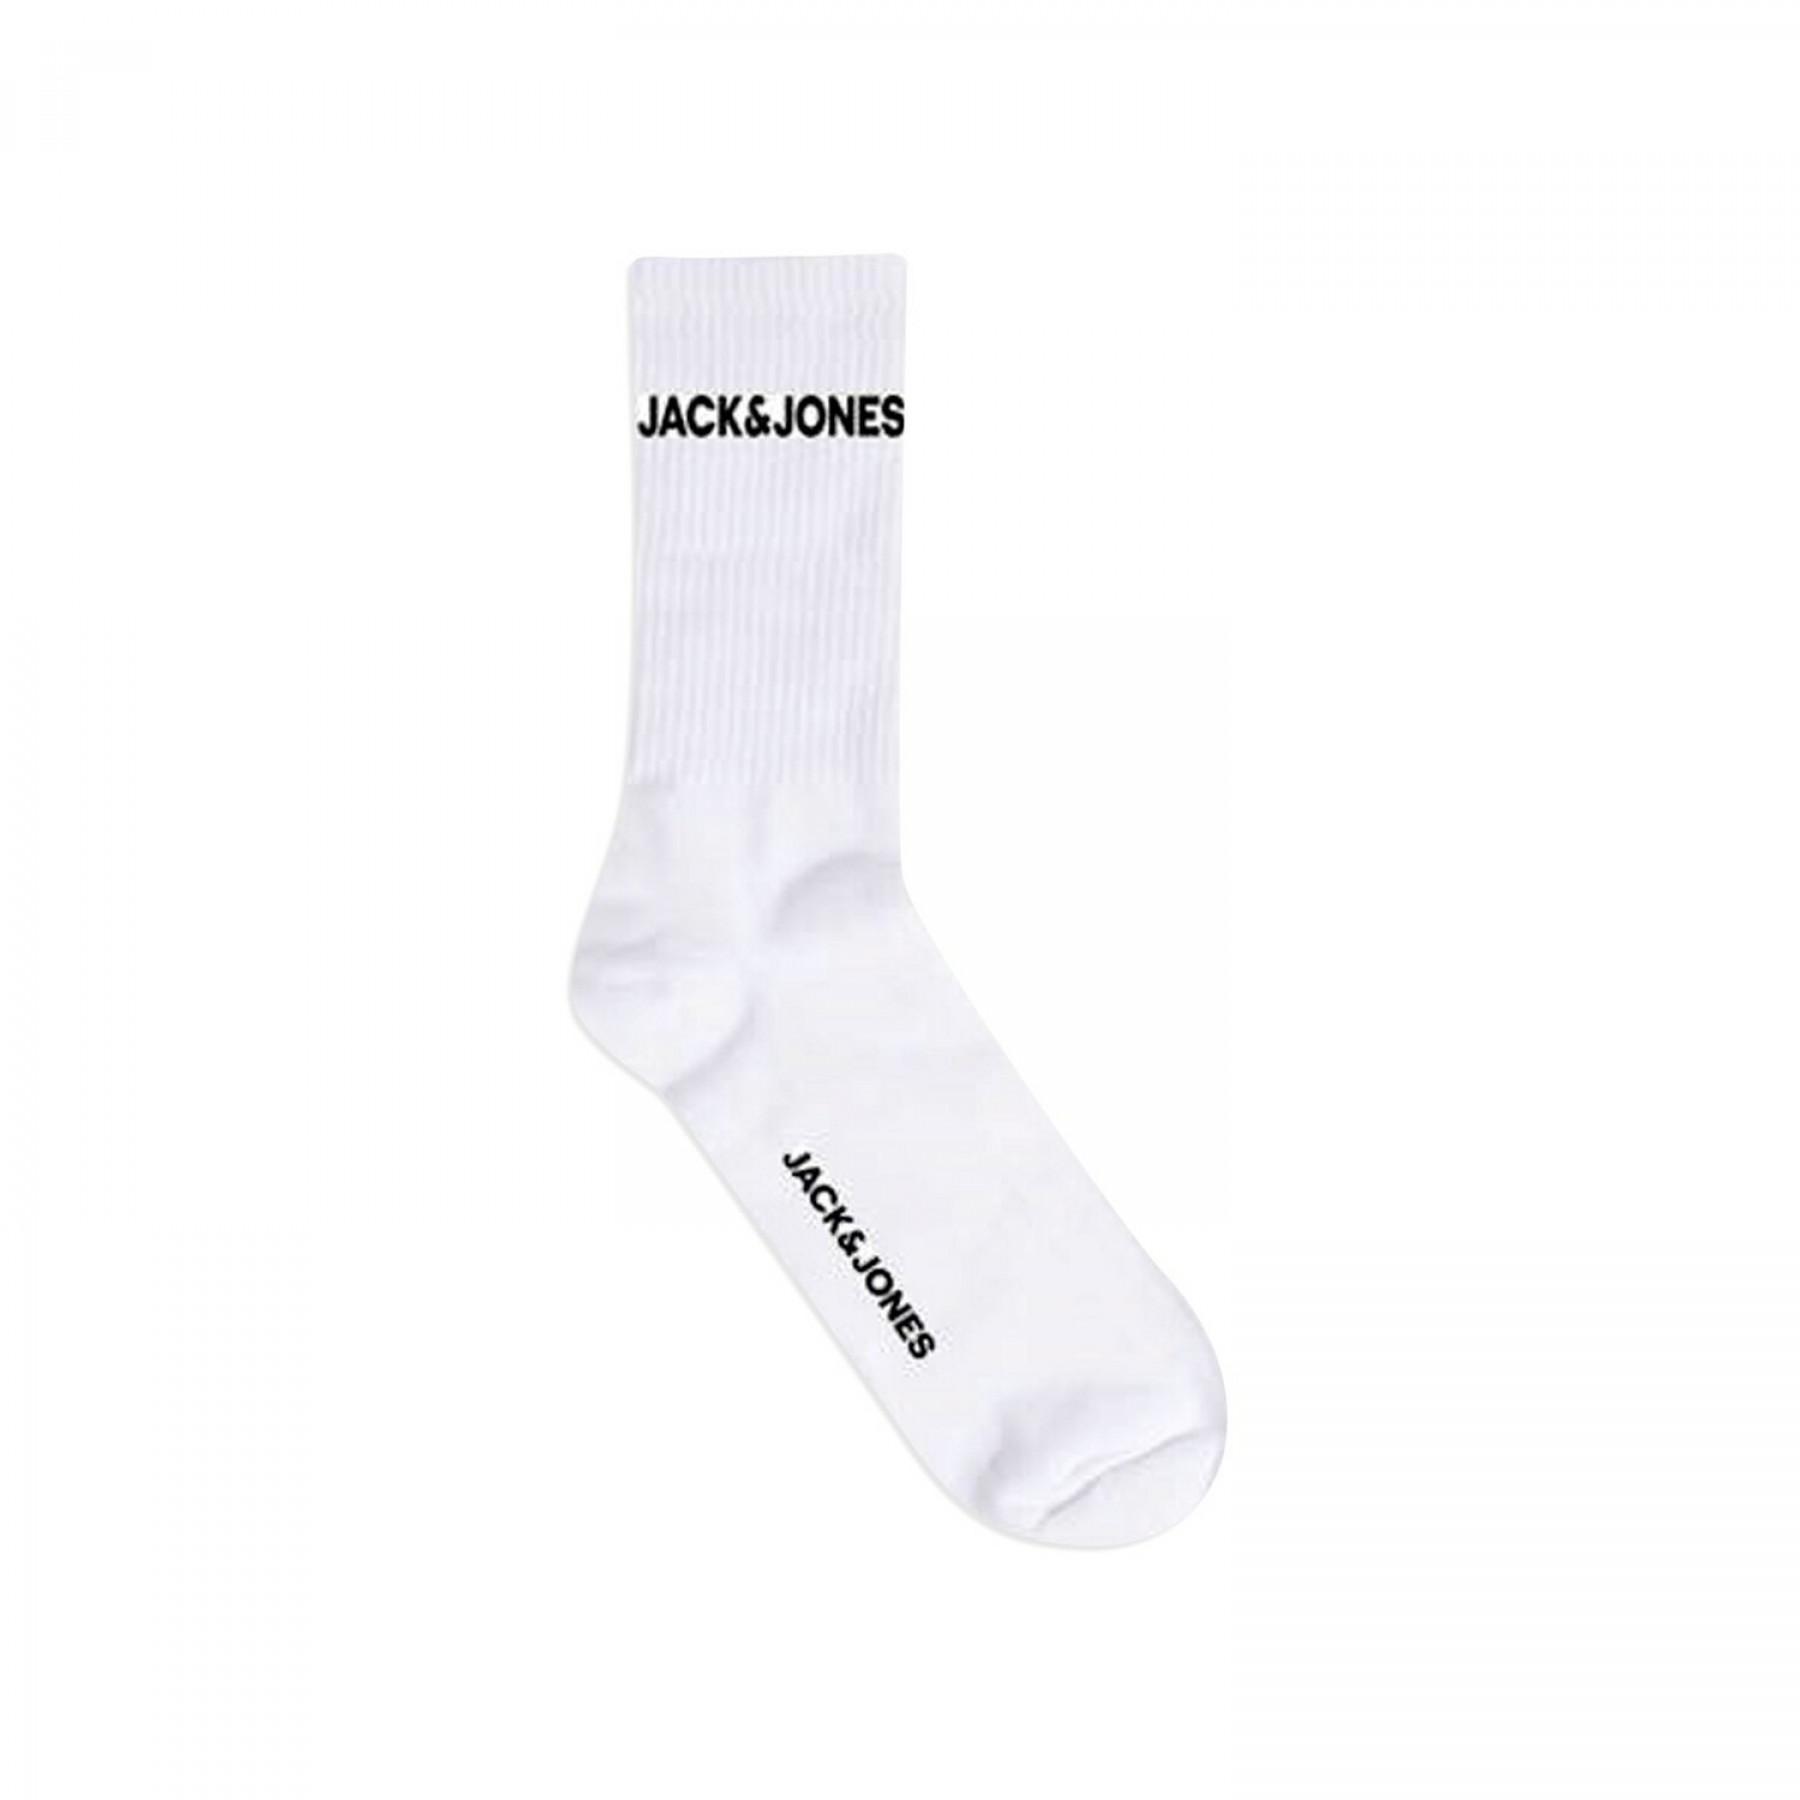 Conjunto de 5 meias Jack & Jones basic tennis